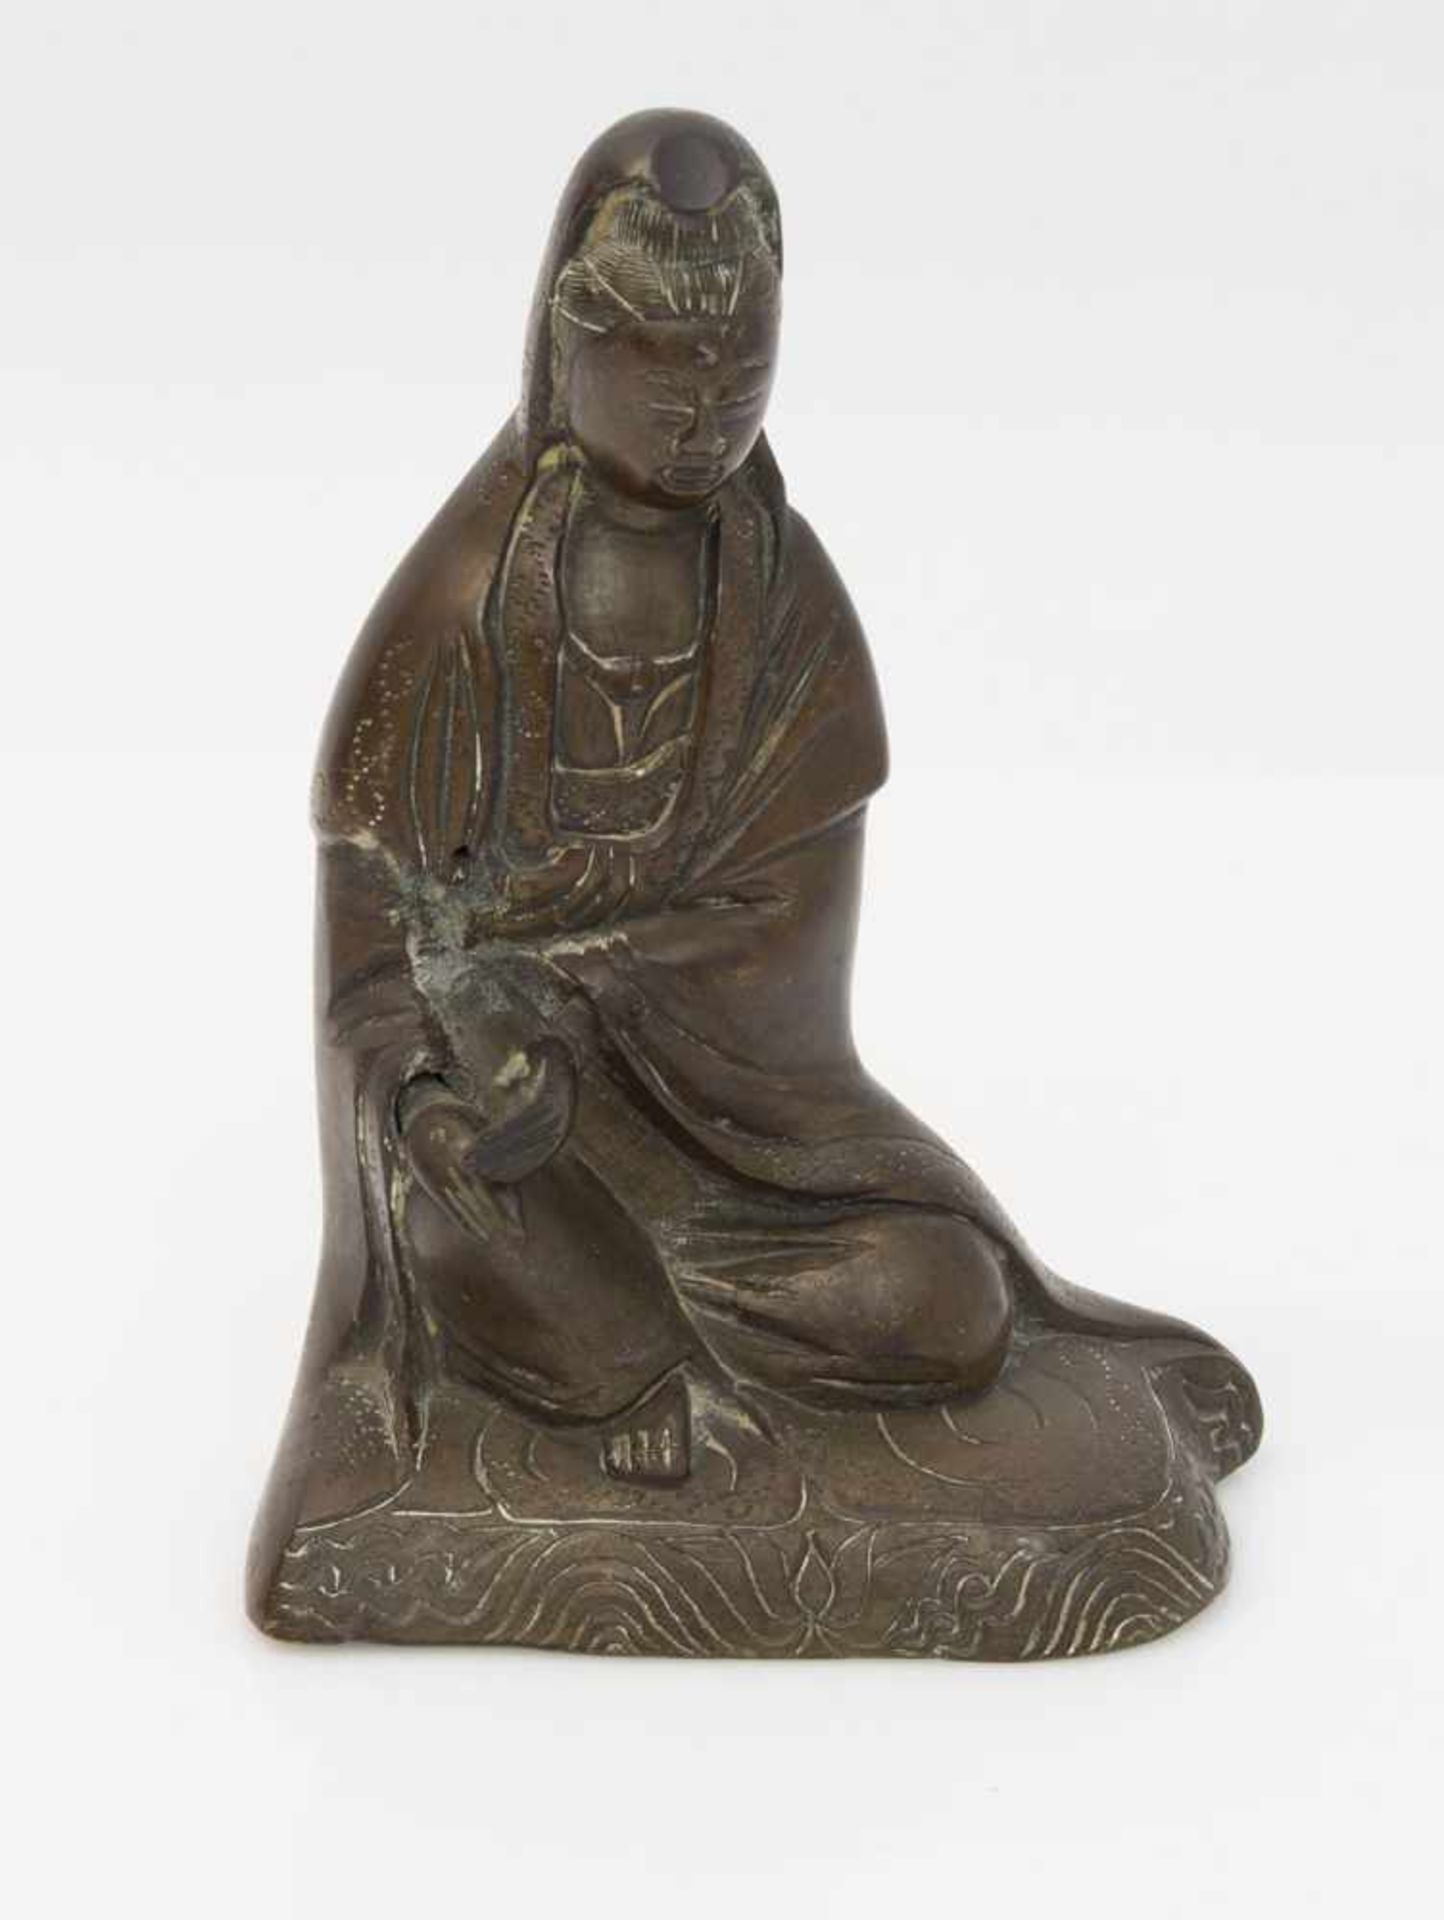 Indischer HeiligerBronze getrieben, um 1930er Jahre, hockender Buddha mit beweglichen Händen in